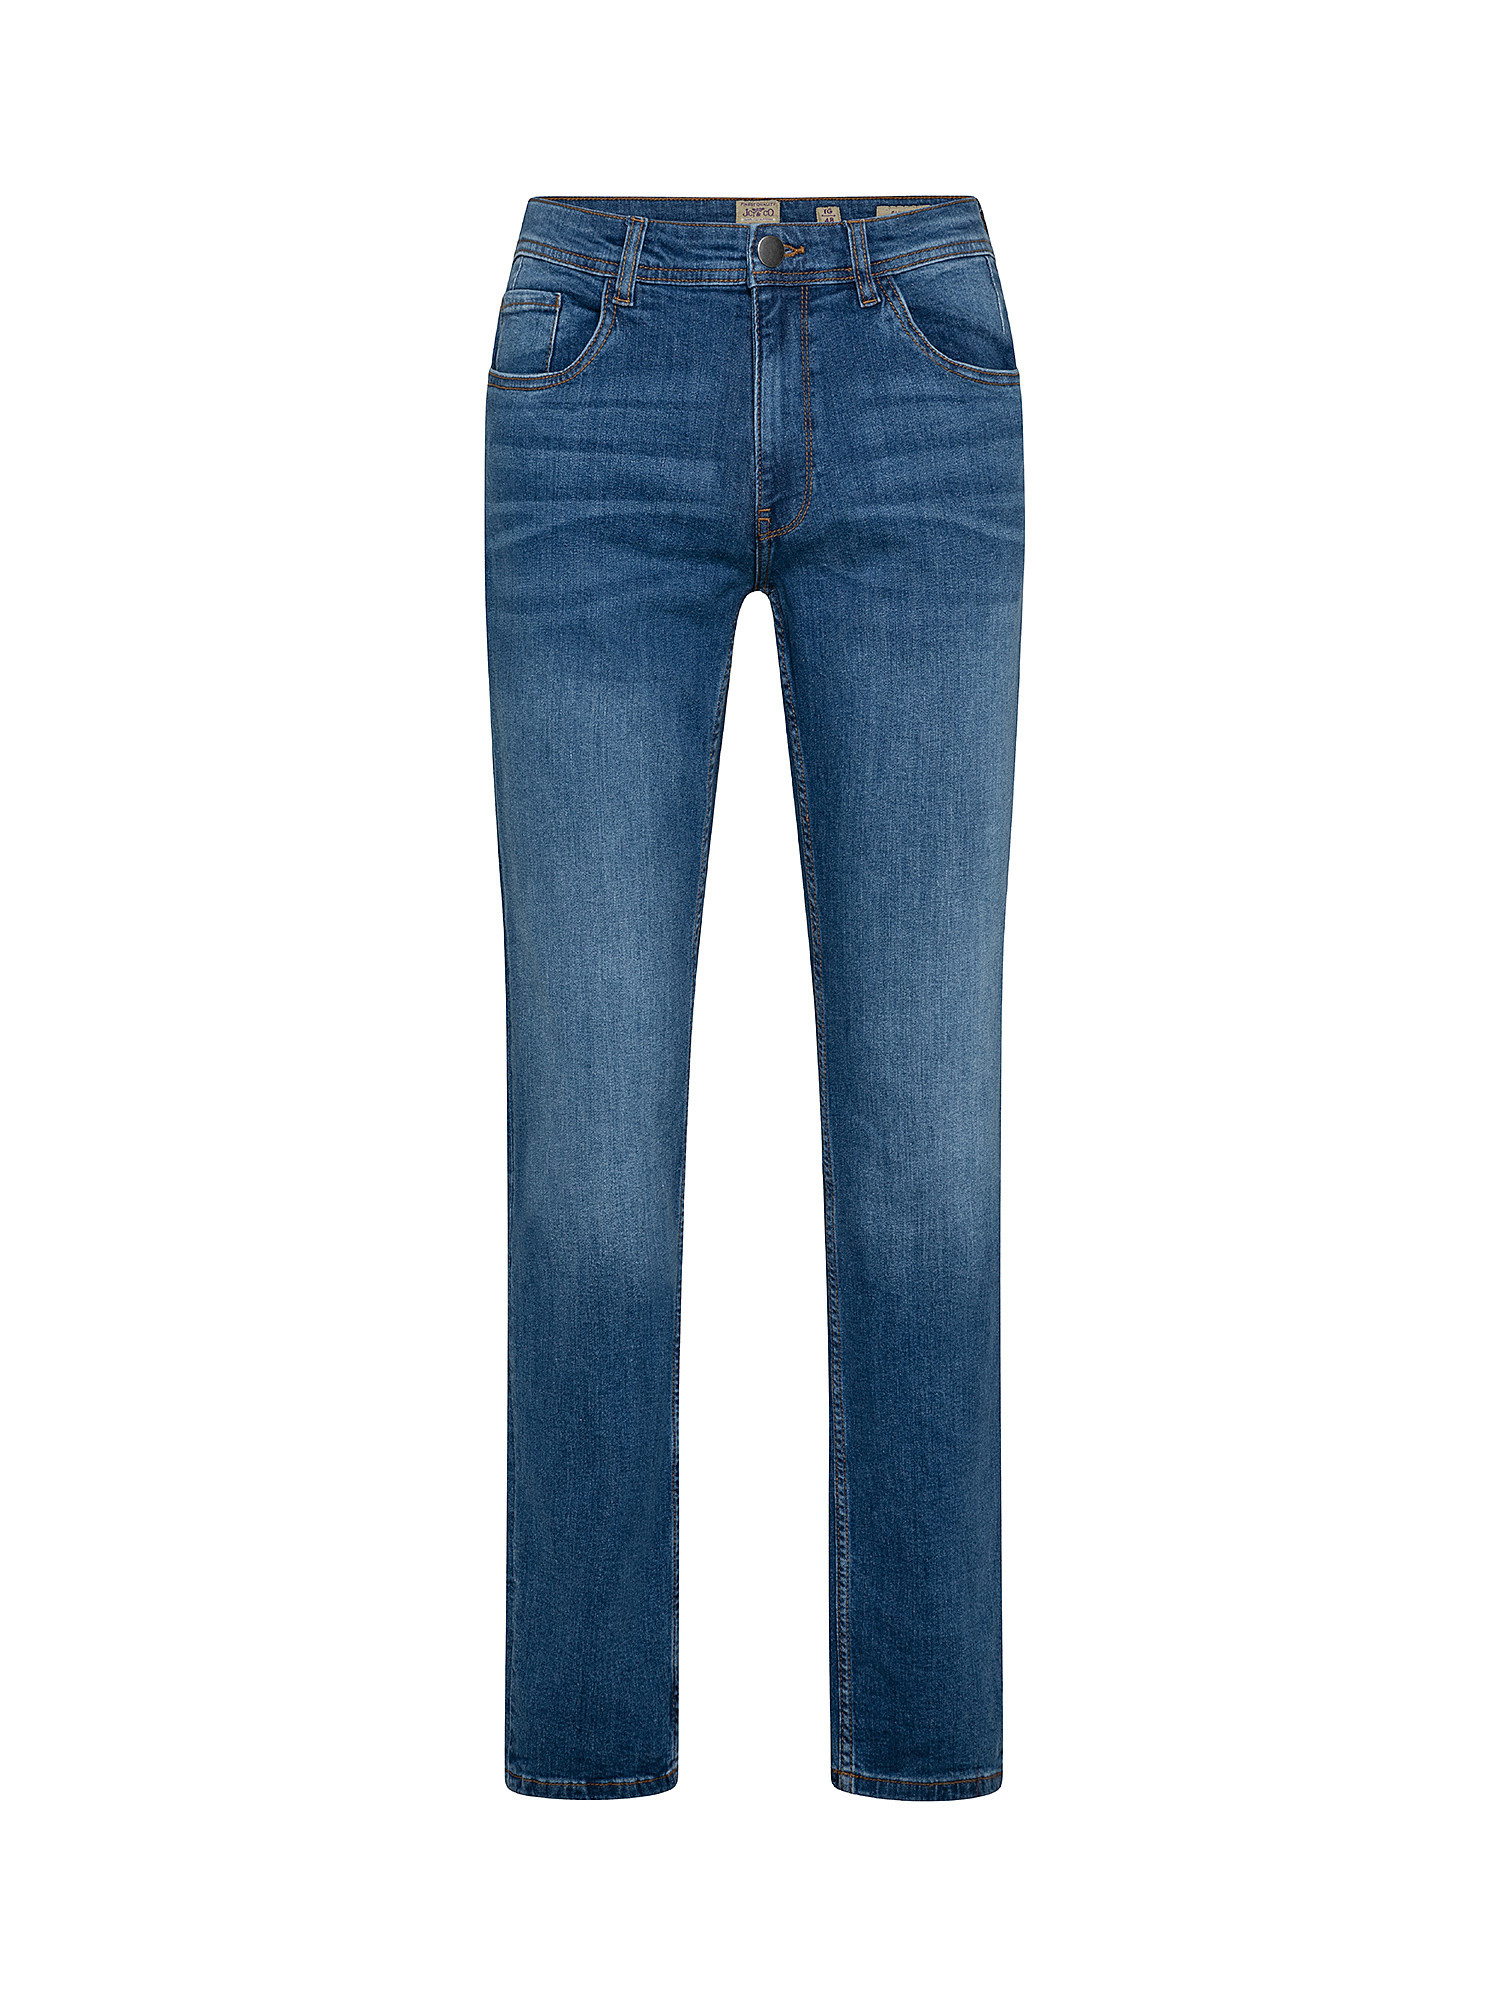 5-pocket slim stretch cotton jeans, Blue, large image number 0